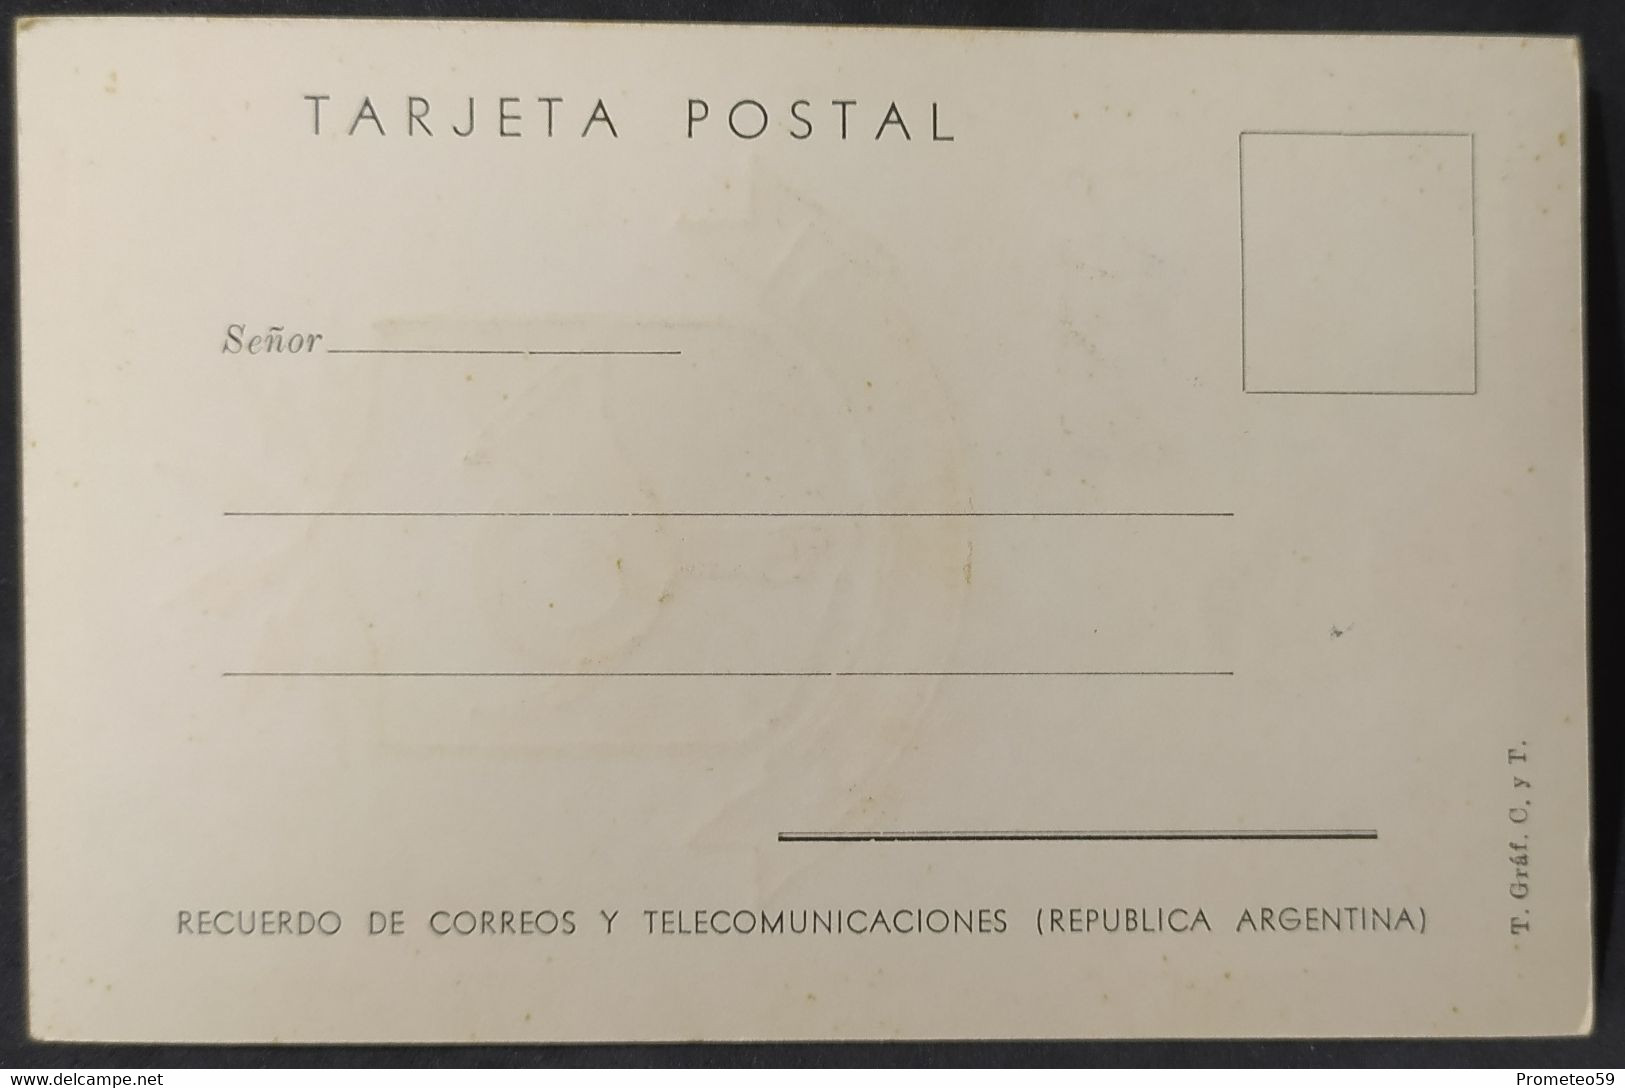 Día de Emisión - Fauna Argentina x 5 - 2/6/1960